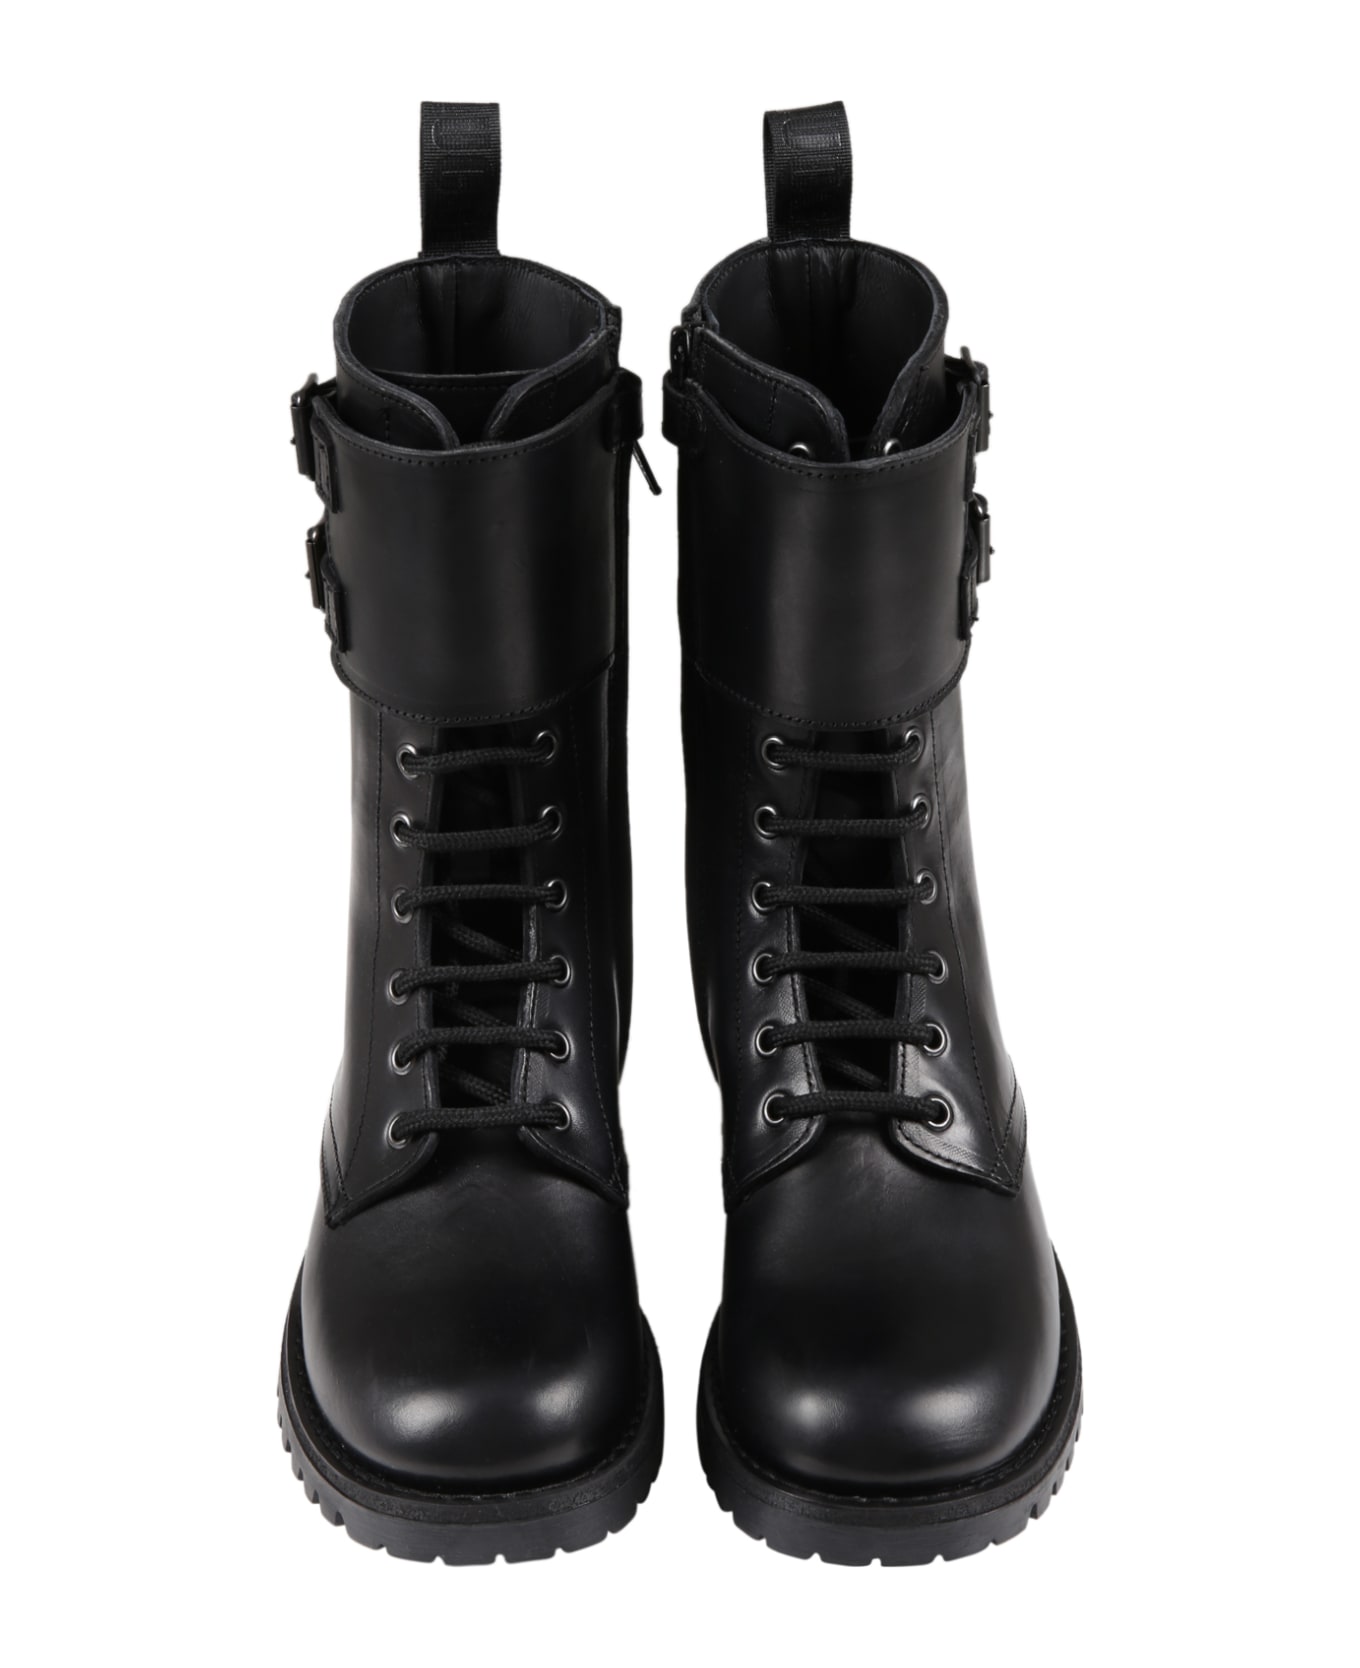 Gallucci Black Boots For Girl - Black